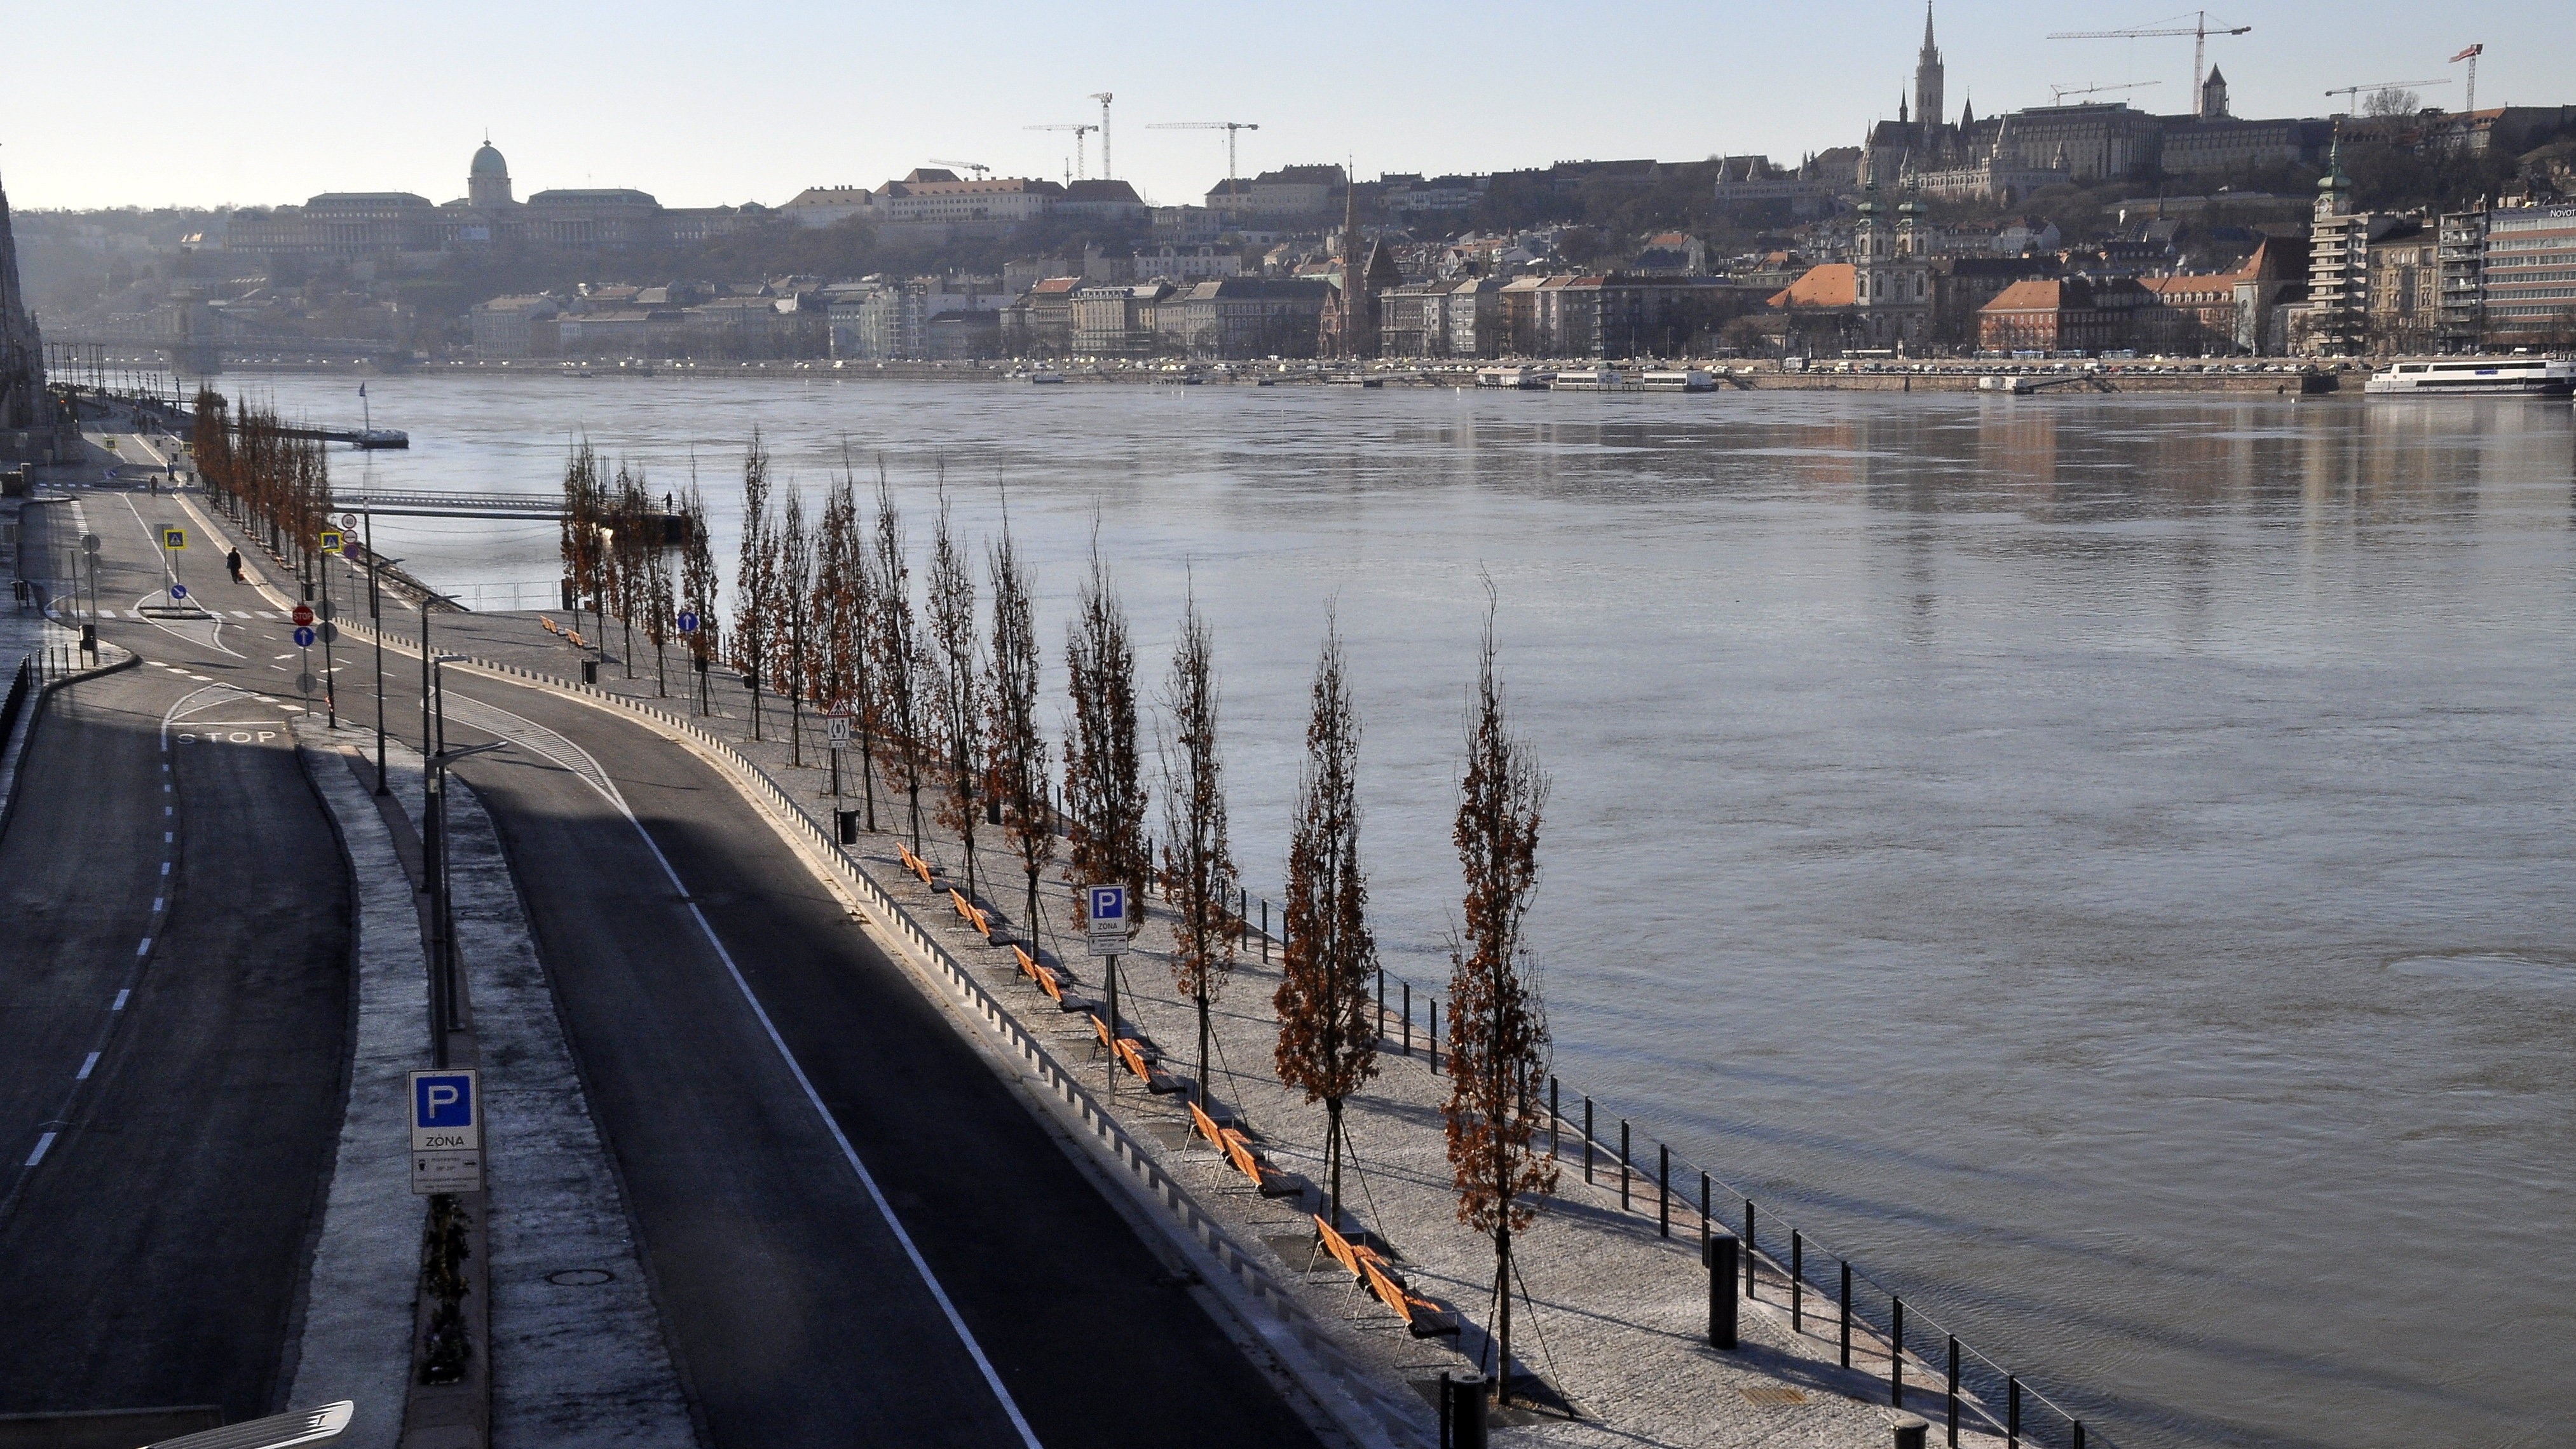 Gyalogos sétány az idősebb Antall József rakpart Parlament és Margit híd közötti szakaszán 2022-ben.